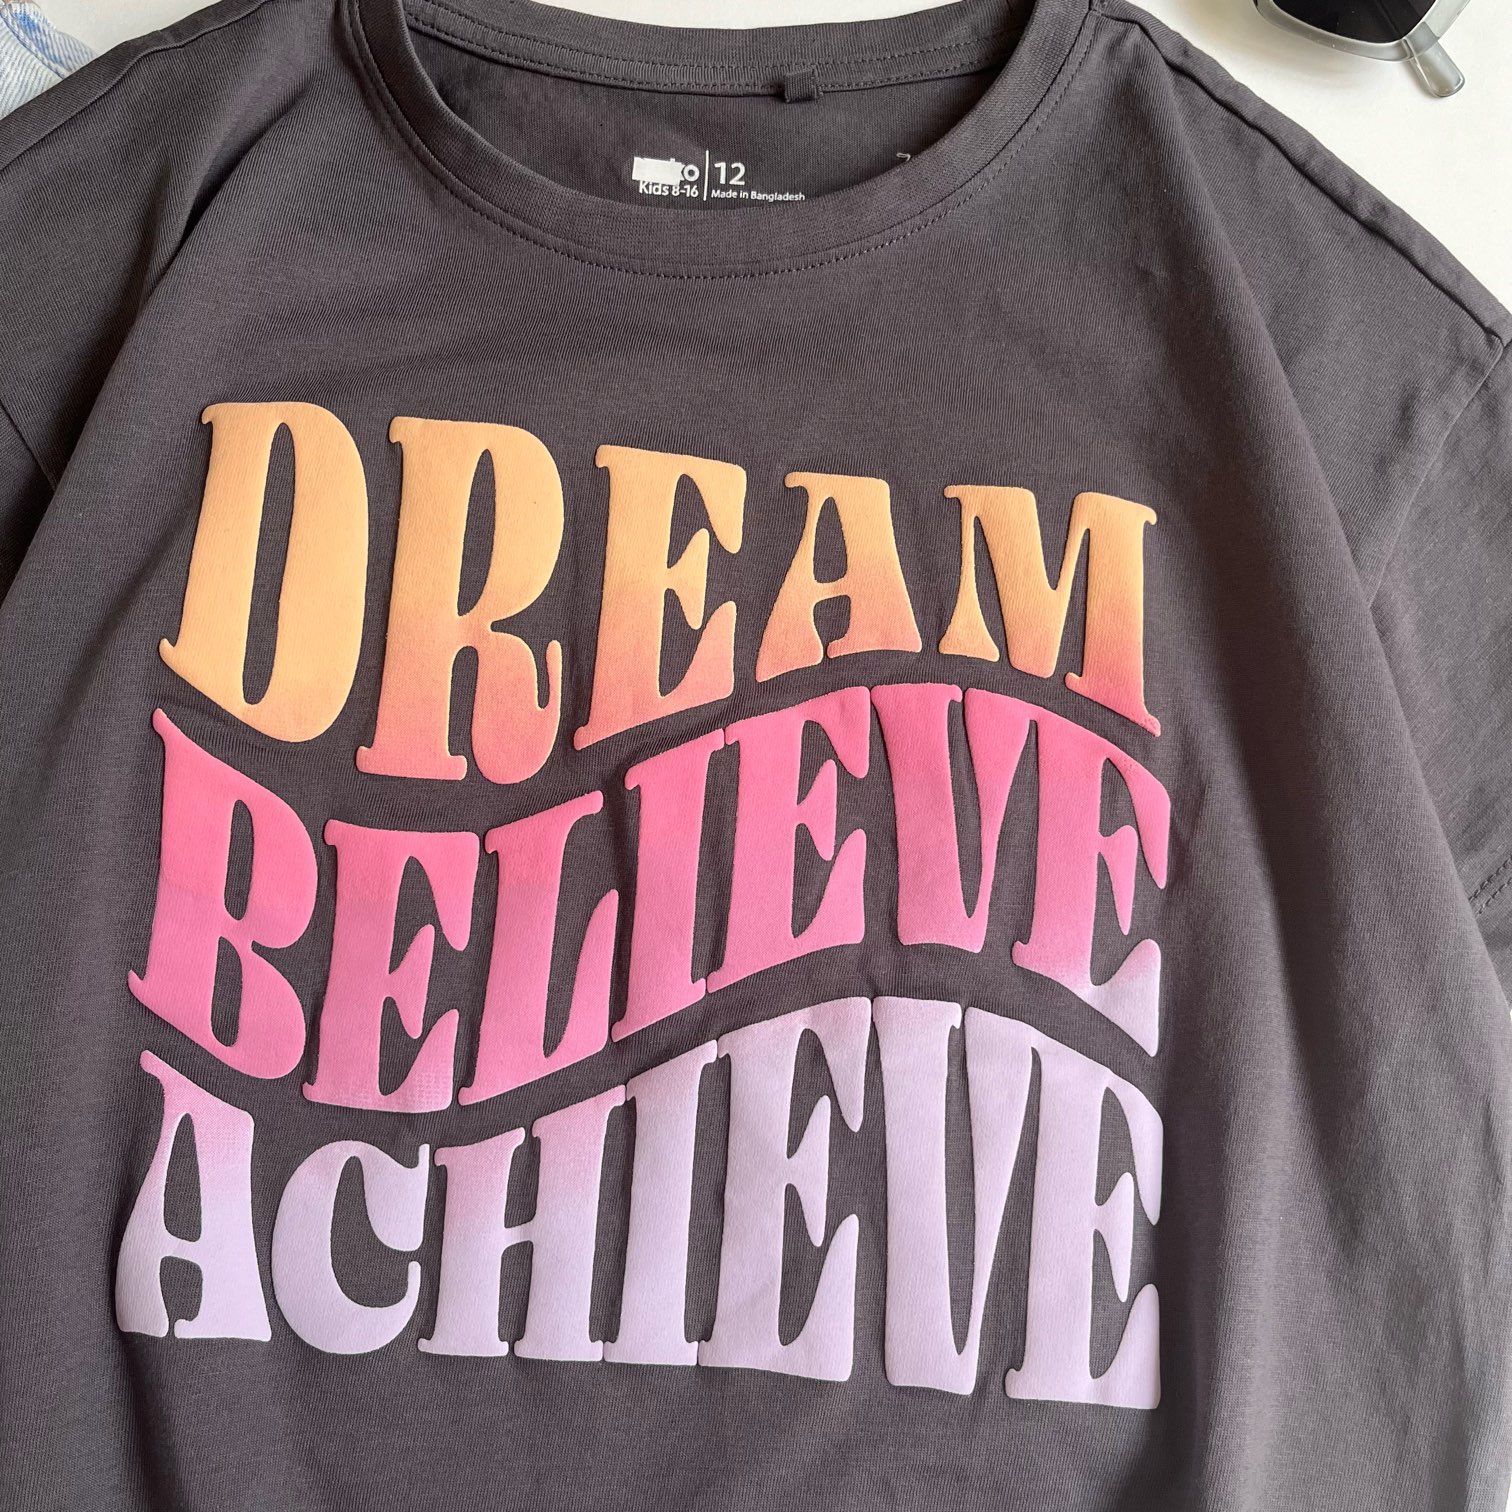 تیشرت dream believe achieve